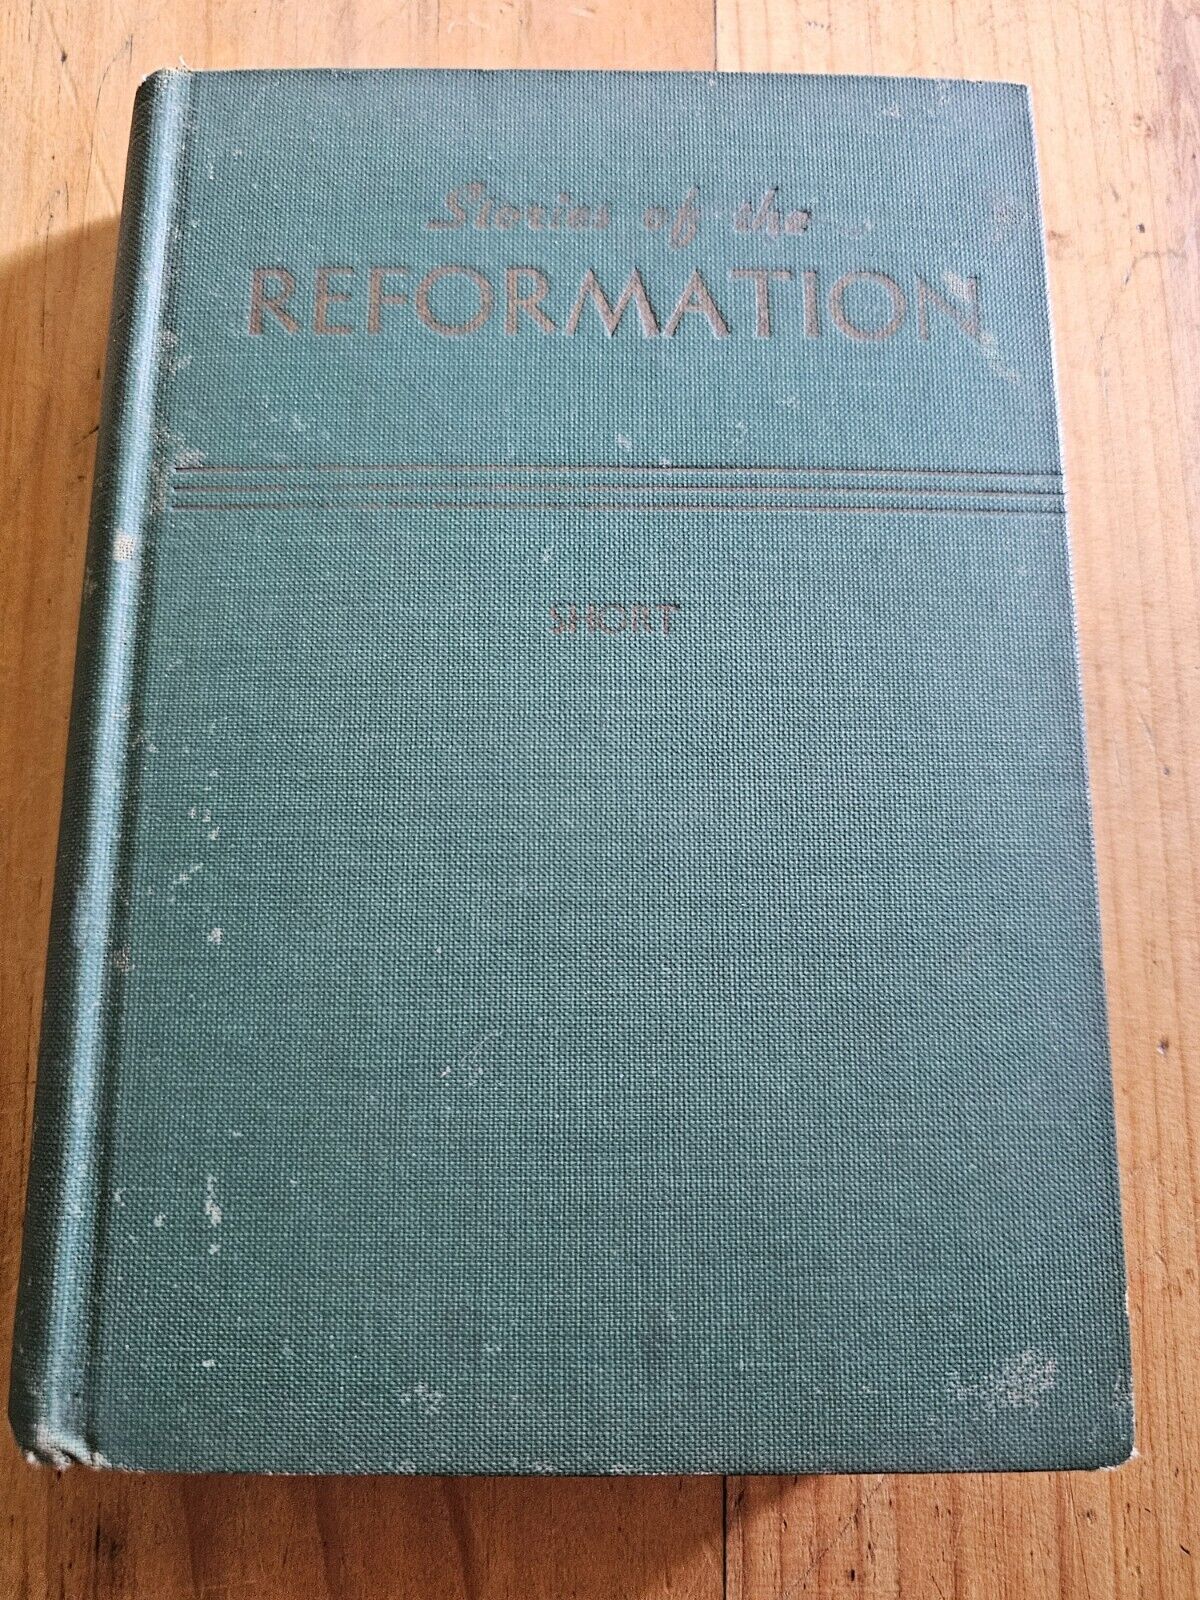 vintage religious book